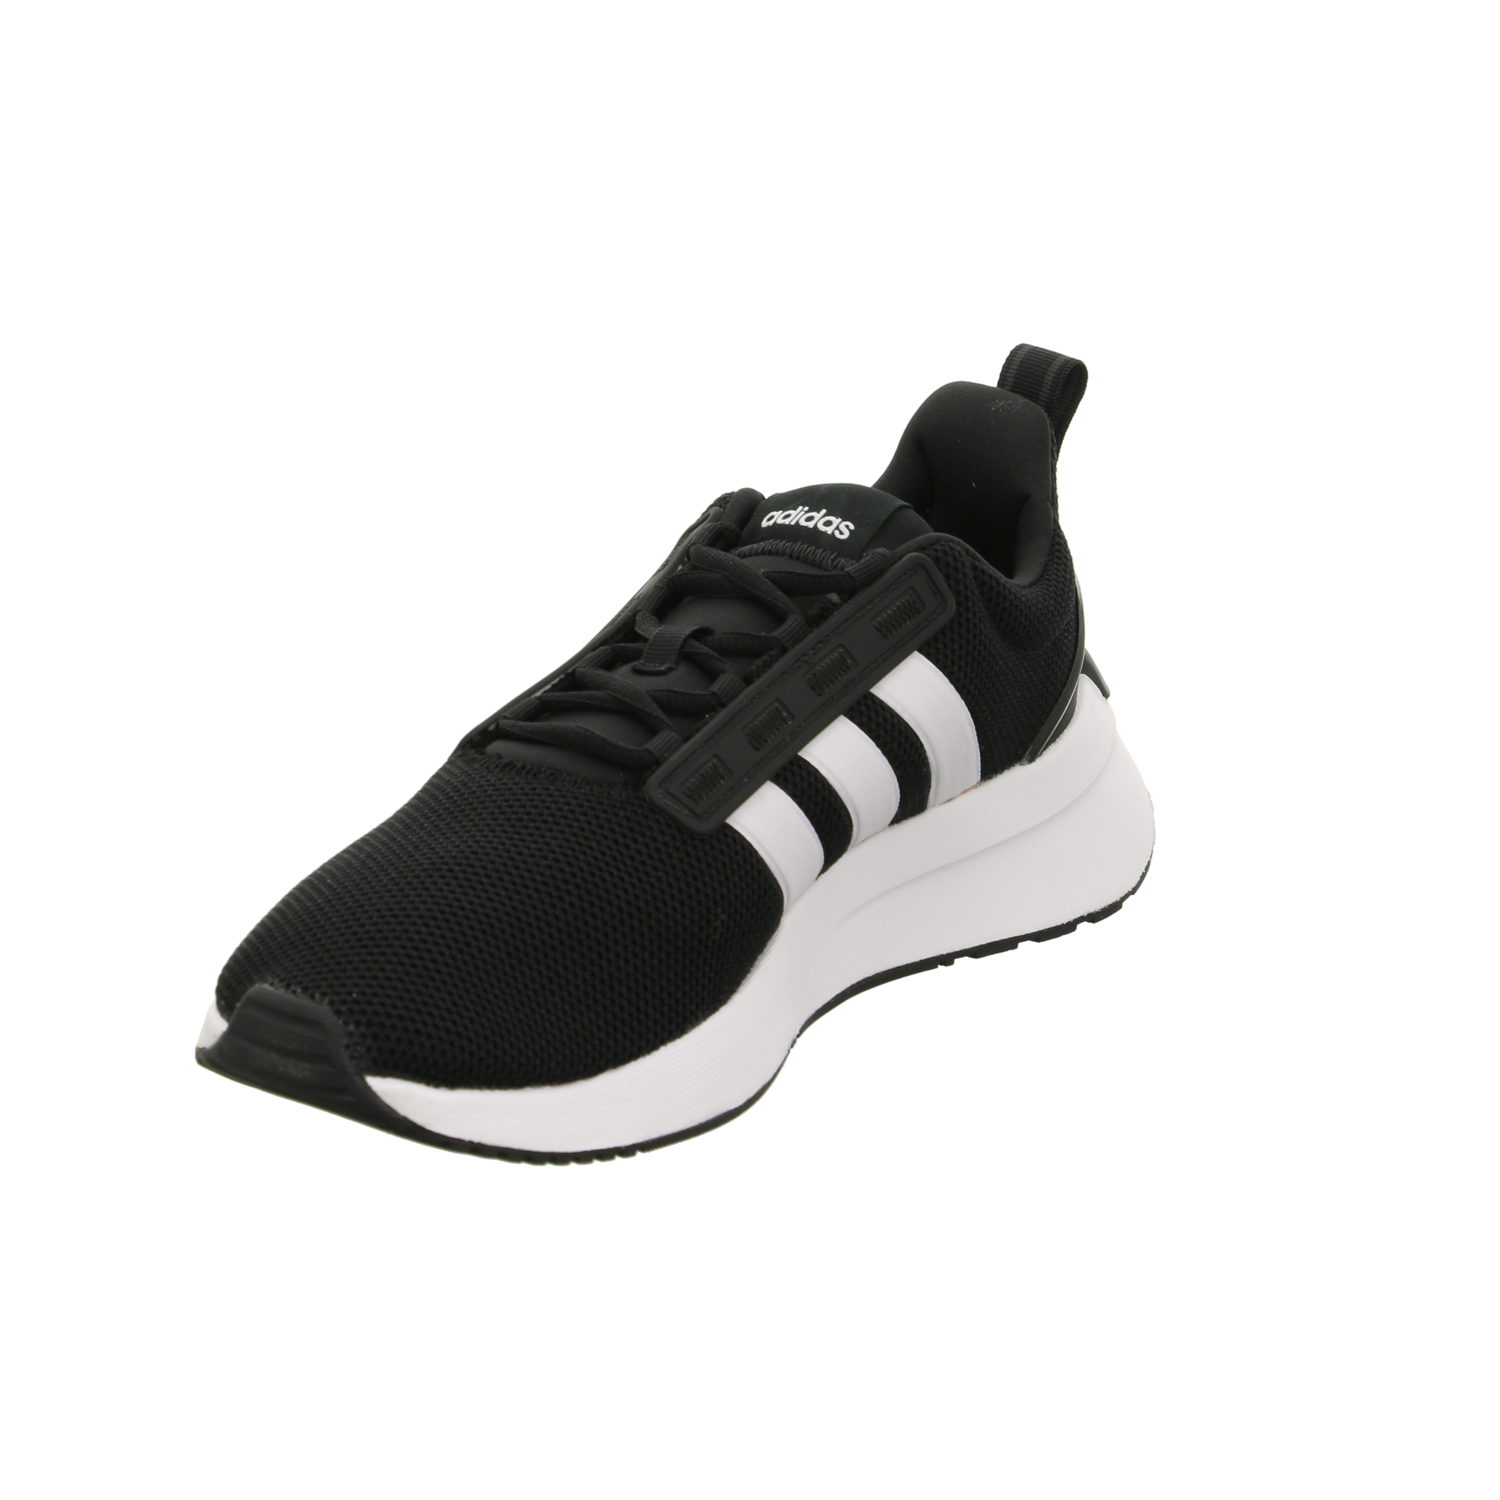 Adidas Sneaker M schwarz